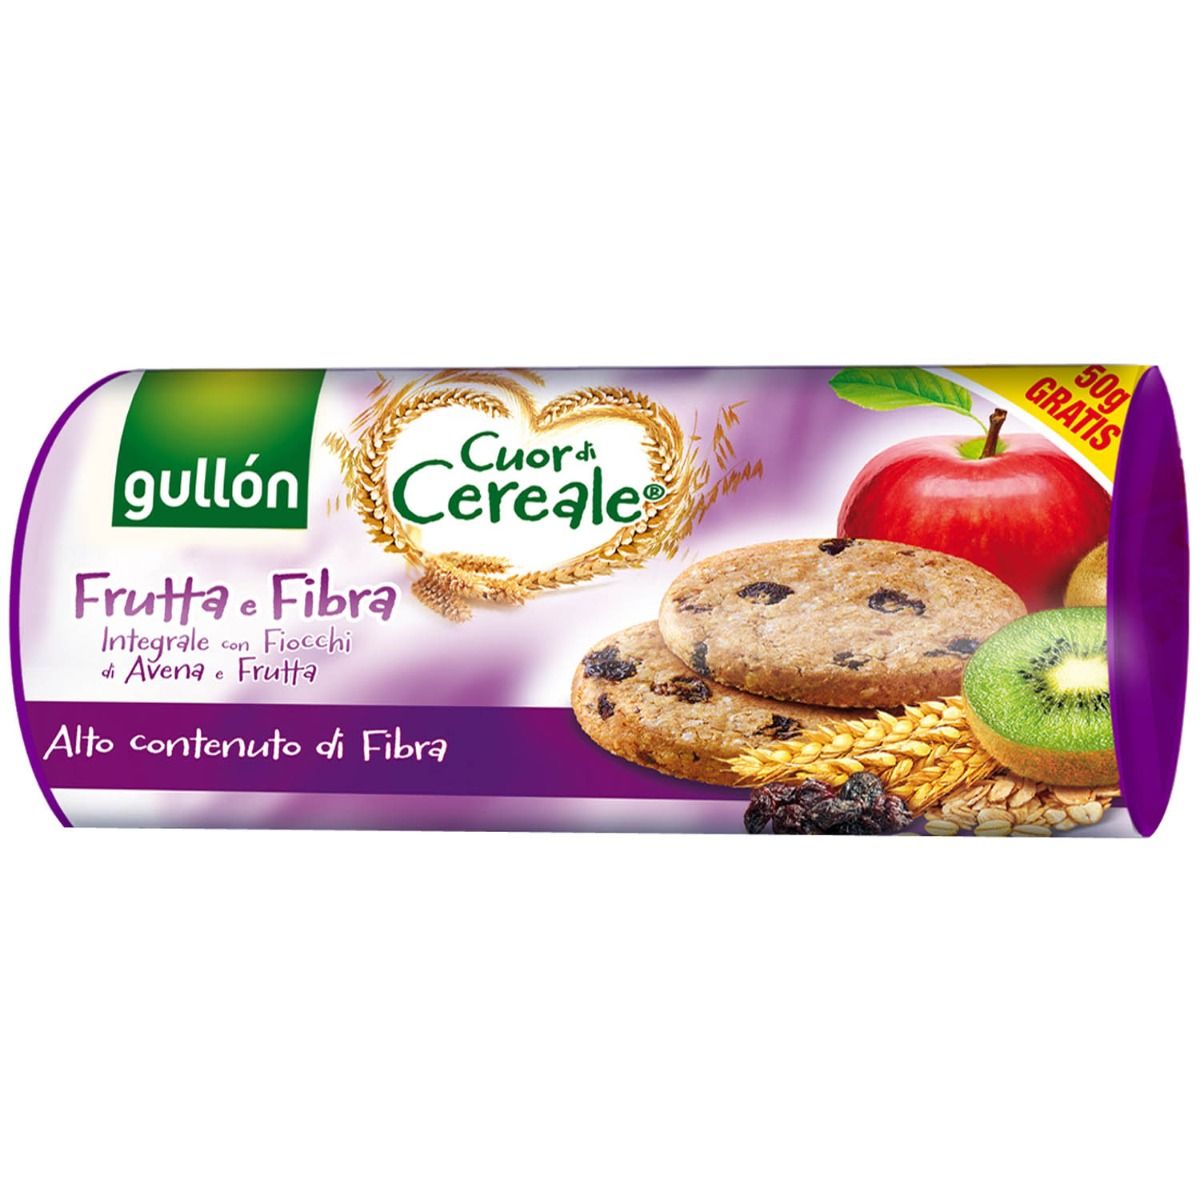 Buy Gullon Cuor di Cereale Frutta e Fibra 300g Online